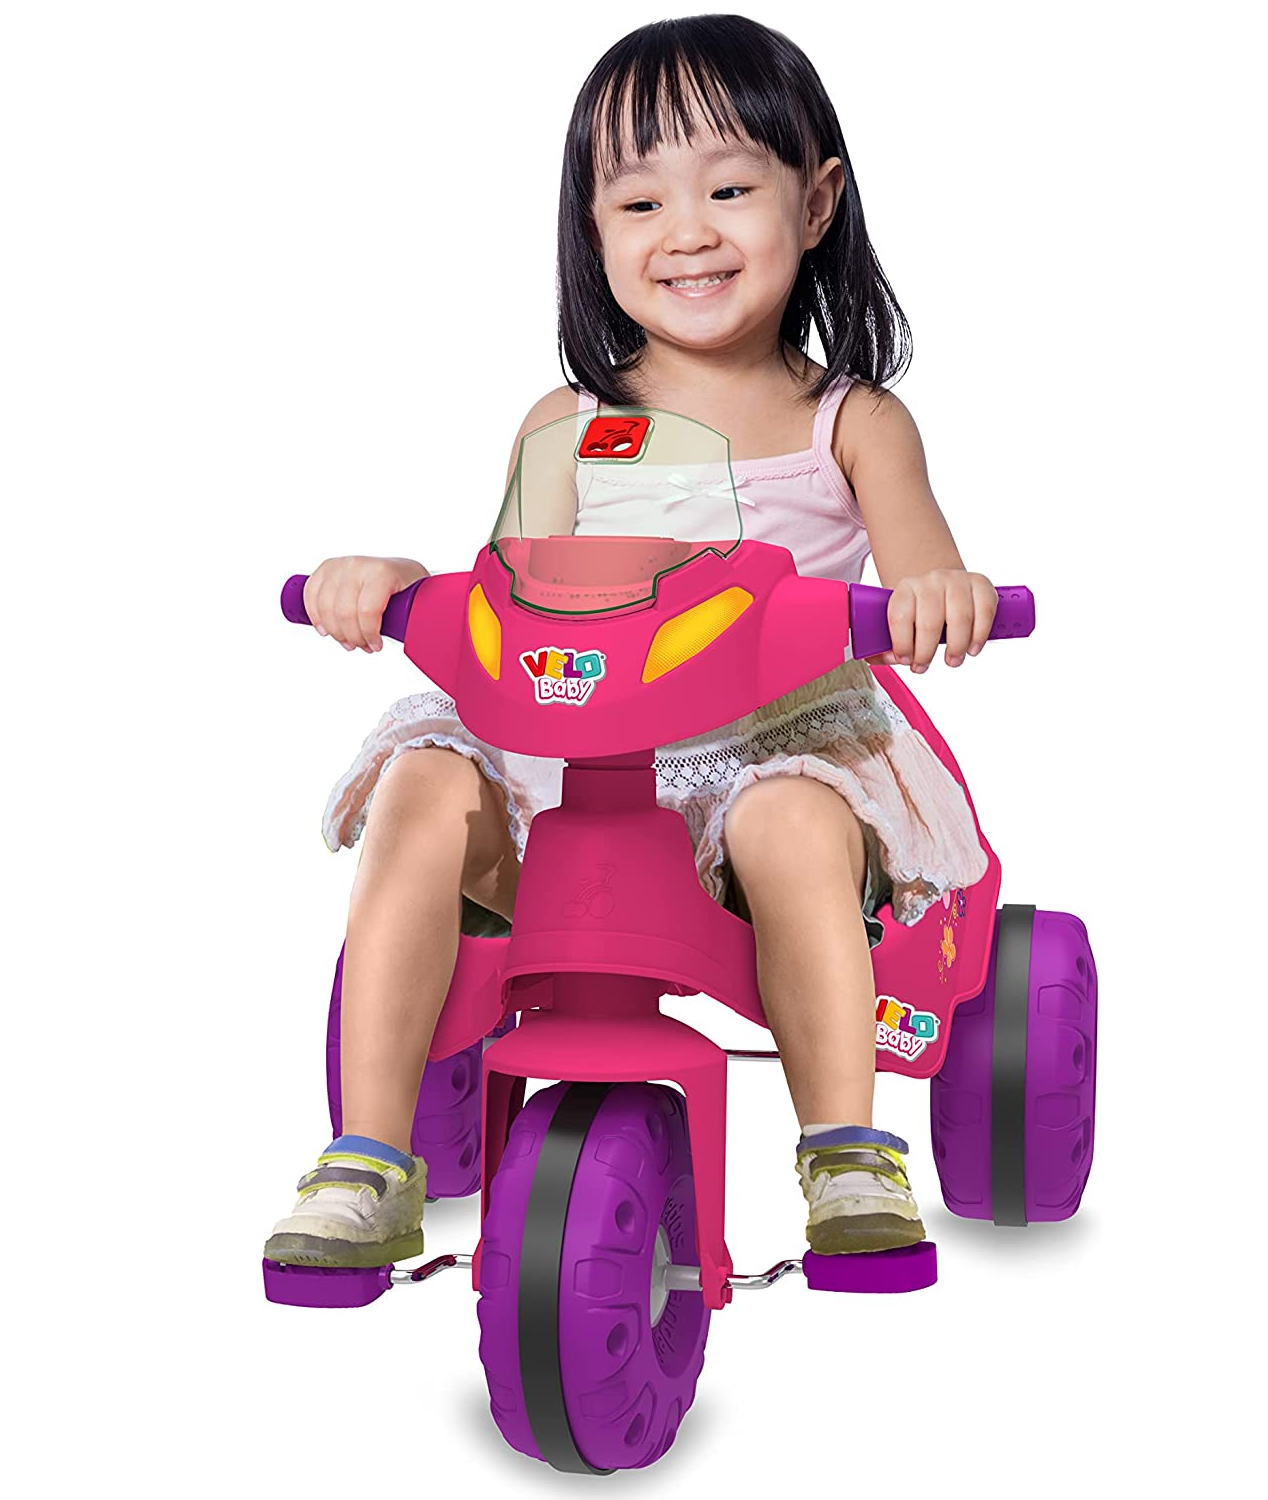 Triciclo Motoca Infantil Menina You Girl Rosa Aro 5 Nathor - Ri Happy